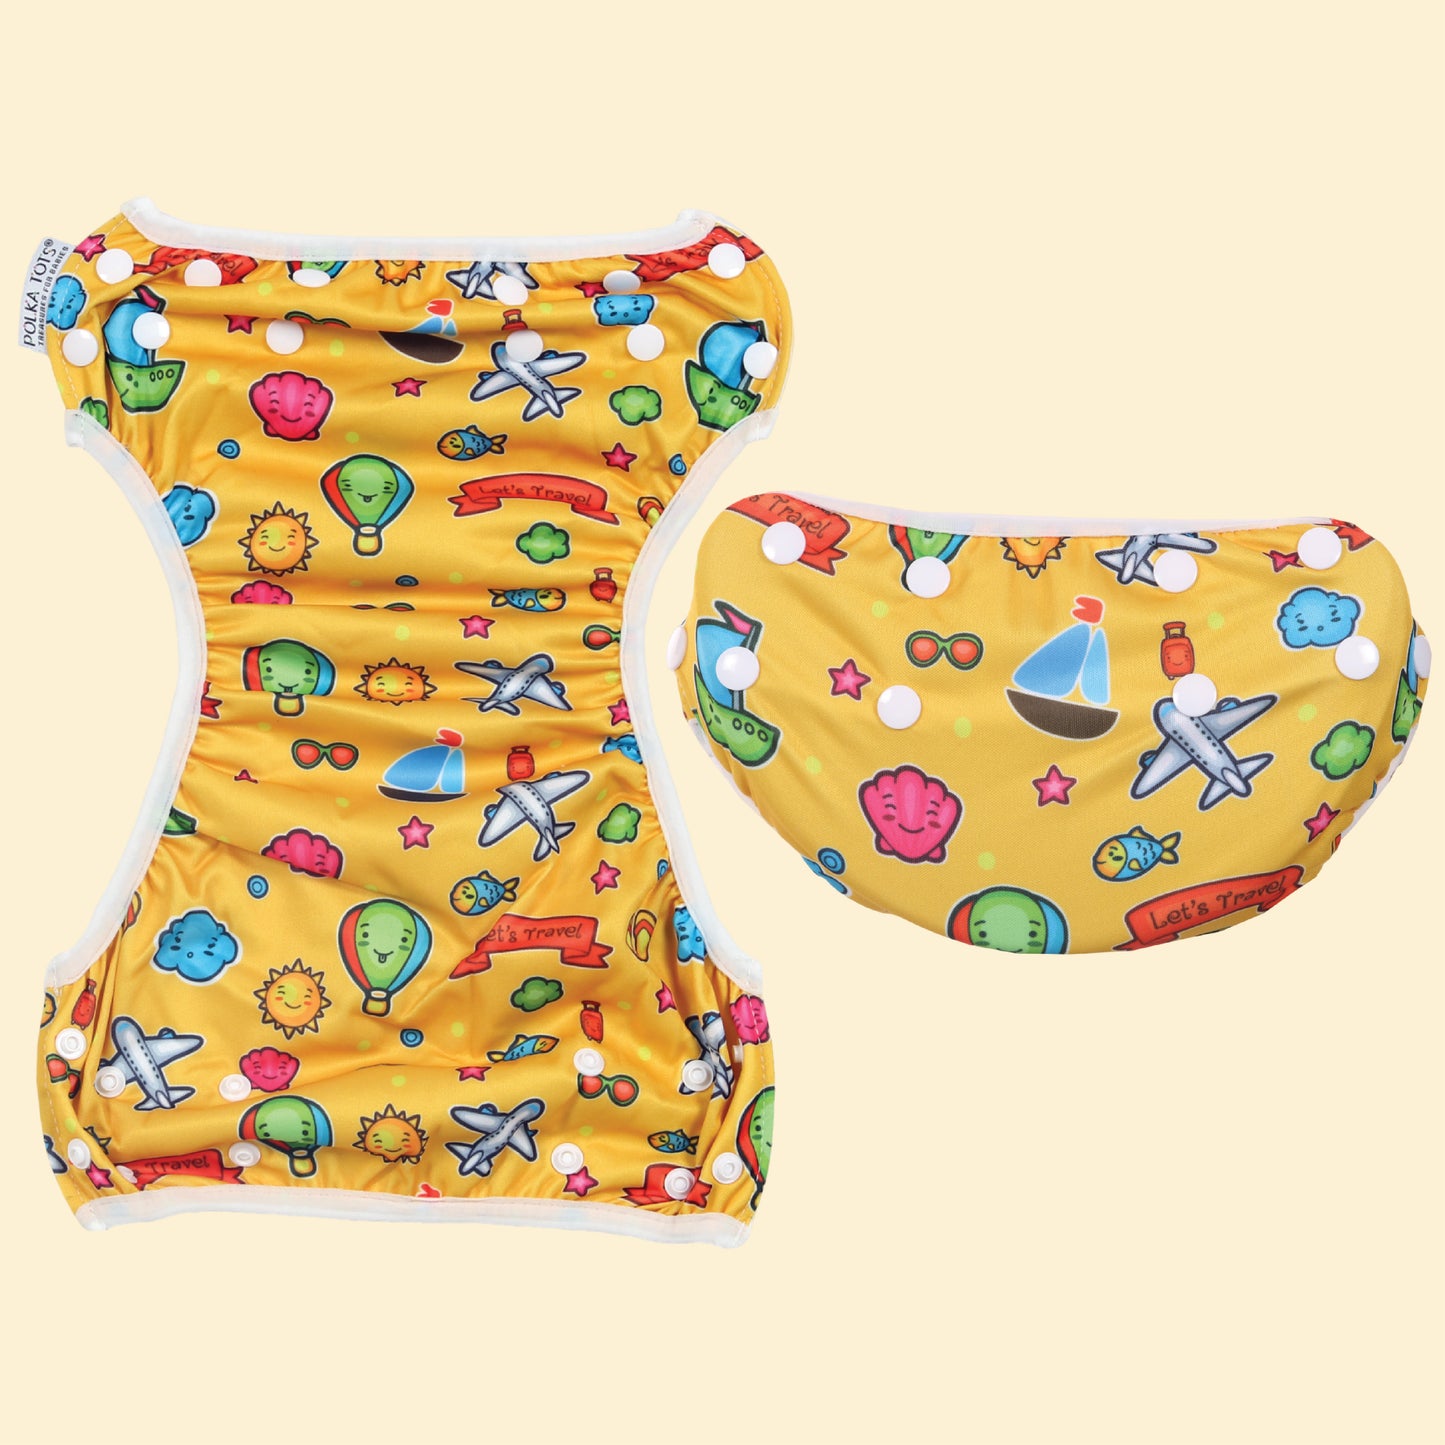 Reusable Swim Diaper/Swim Costume Travel Design